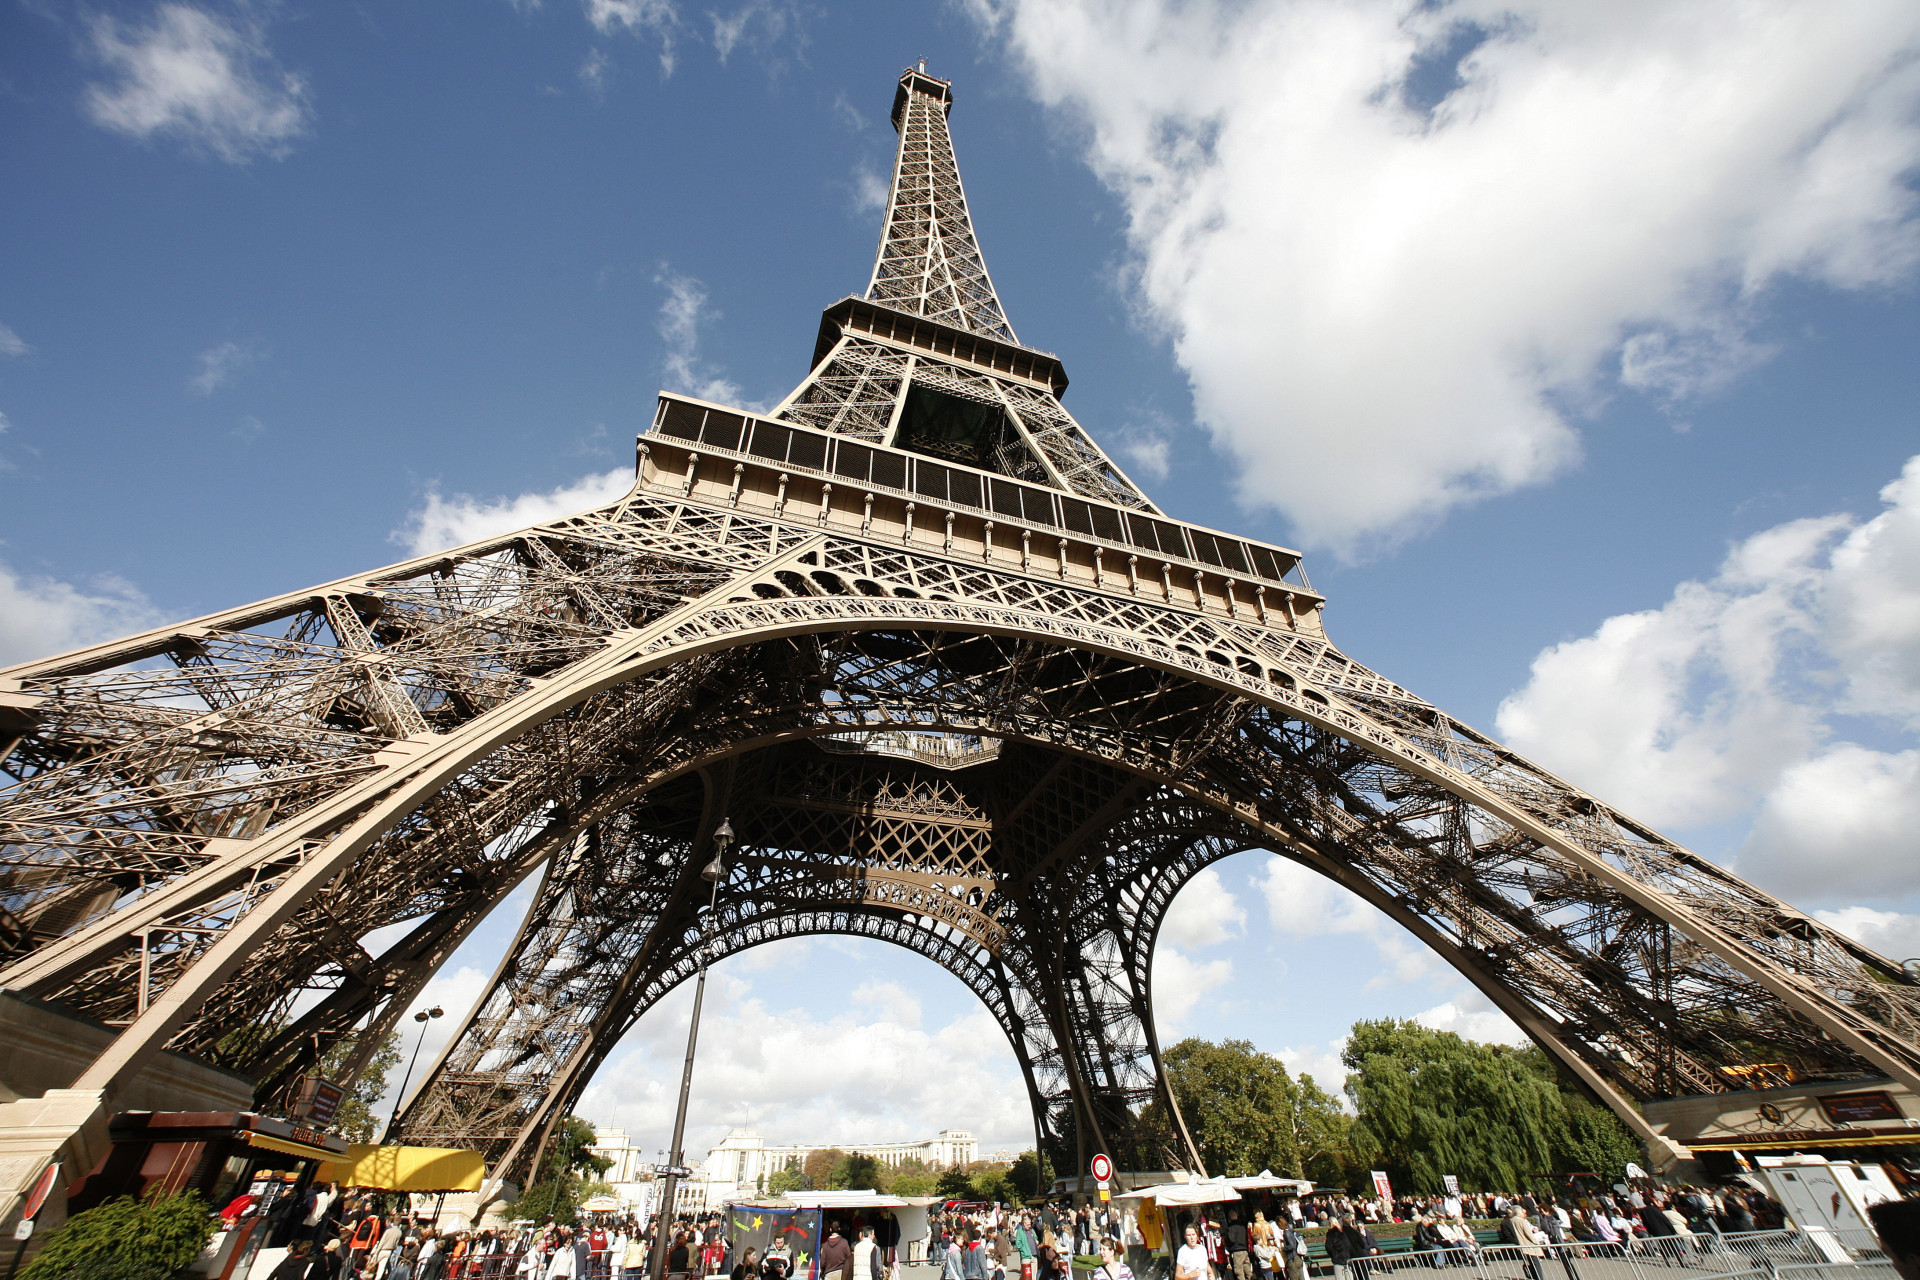 <p>On estime qu'il y a annuellement sept millions de visiteurs venus du monde entier qui viennent visiter la tour Eiffel.</p><p><a href="https://www.msn.com/fr-fr/community/channel/vid-7xx8mnucu55yw63we9va2gwr7uihbxwc68fxqp25x6tg4ftibpra?cvid=94631541bc0f4f89bfd59158d696ad7e">Suivez-nous et accédez tous les jours à du contenu exclusif</a></p>